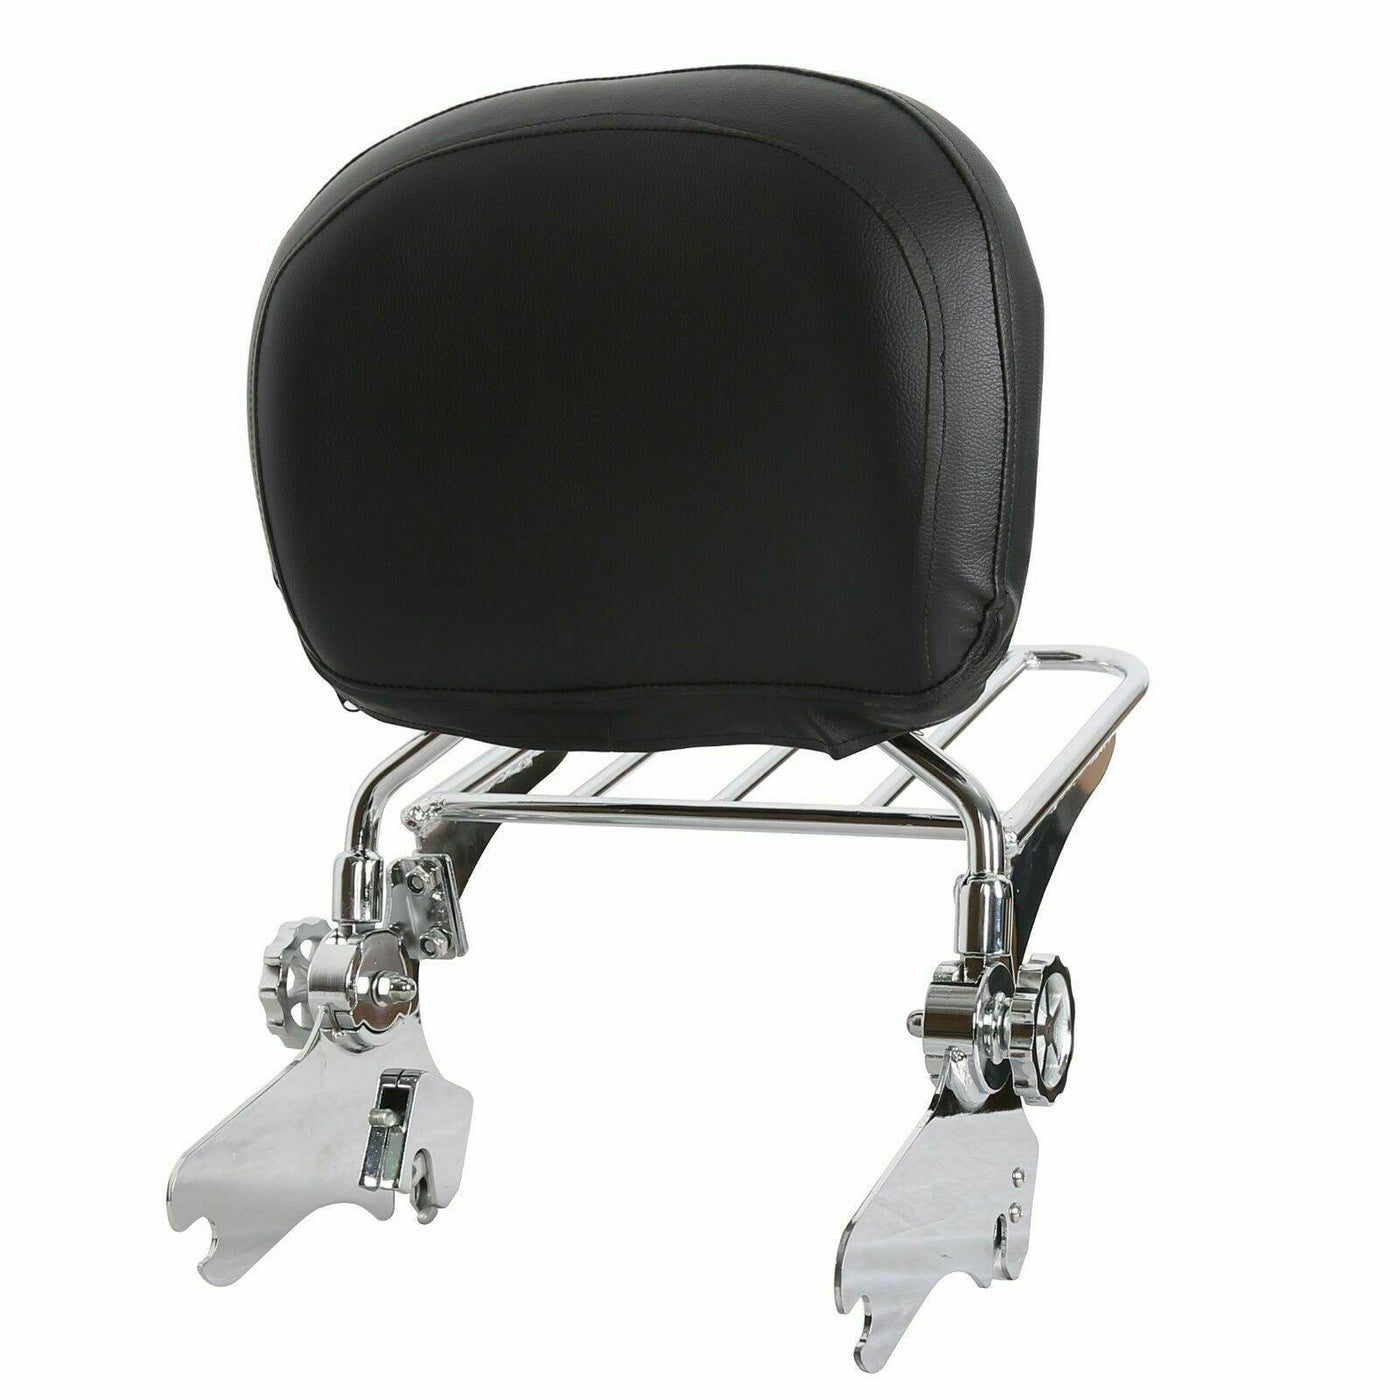 Adjustable Sissy Bar Backrest & Luggage Rack For Harley 97-08 Davidson Road King - Moto Life Products